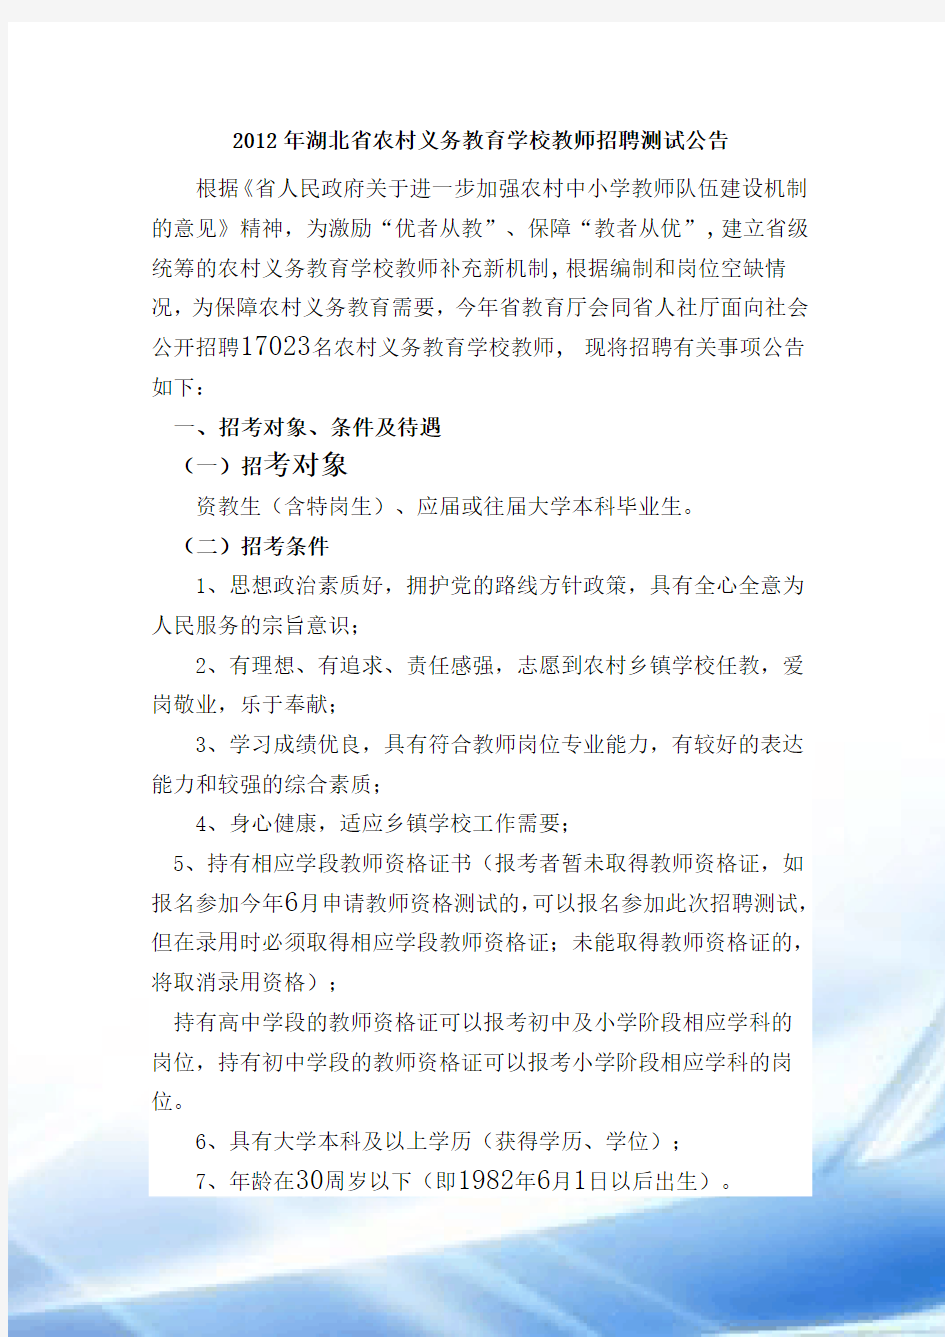 2012年湖北省农村义务教育学校教师招聘考试公告